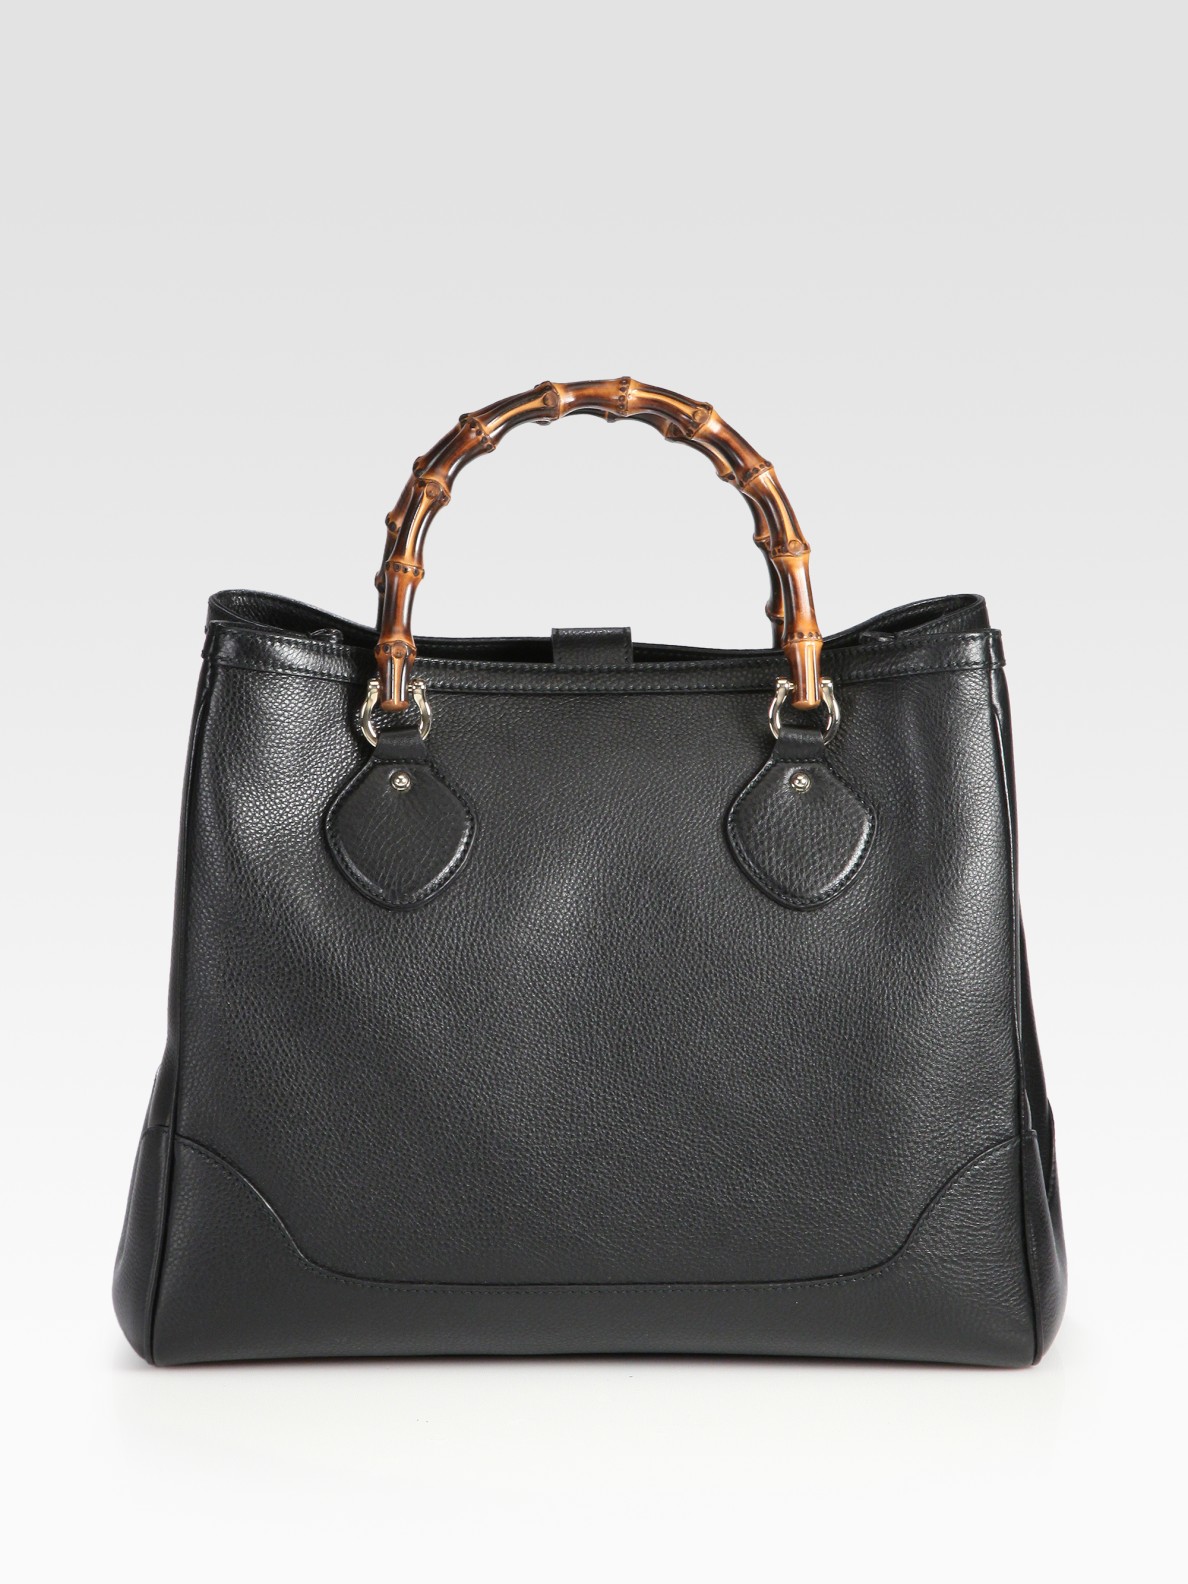 Lyst - Gucci Diana Bamboo Medium Tote Bag in Black